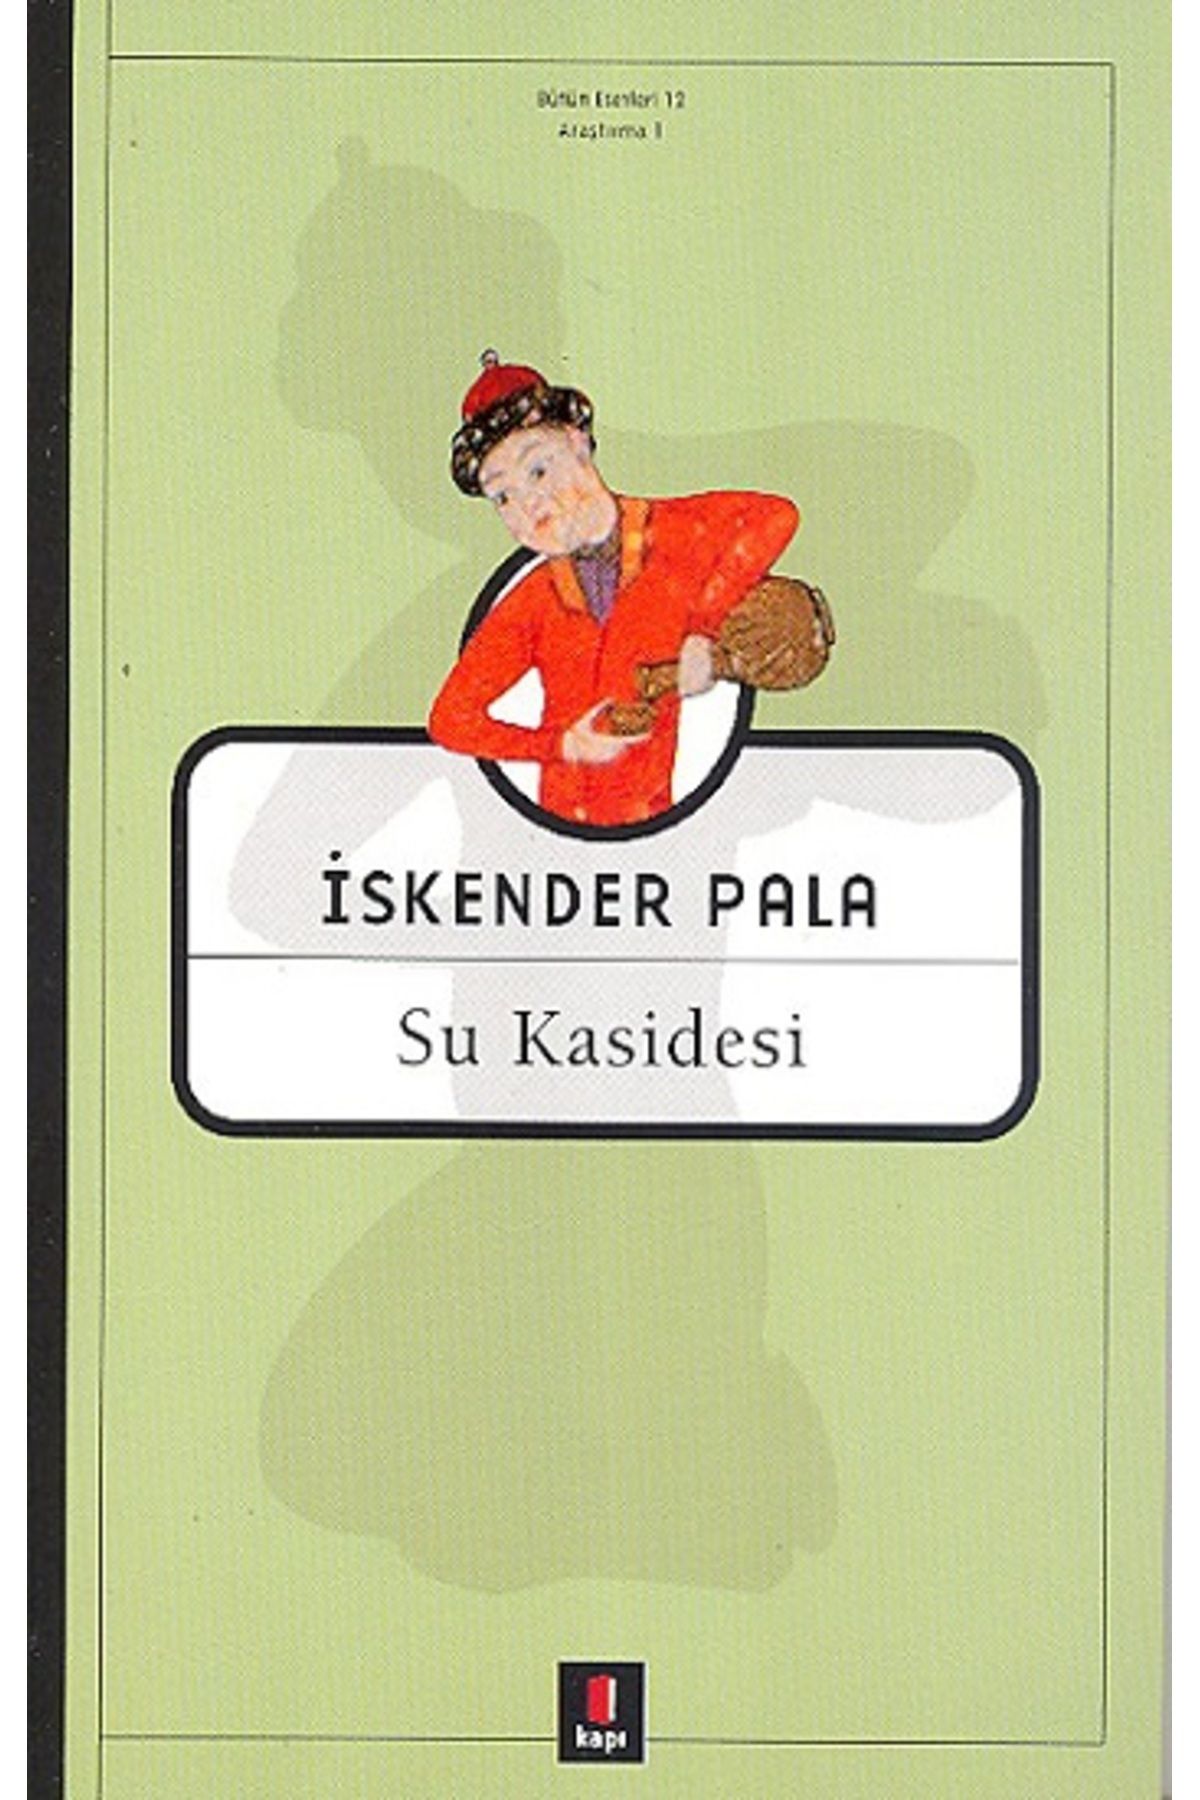 Kapı Yayınları Su Kasidesi kitabı / İskender Pala / Kapı Yayınları